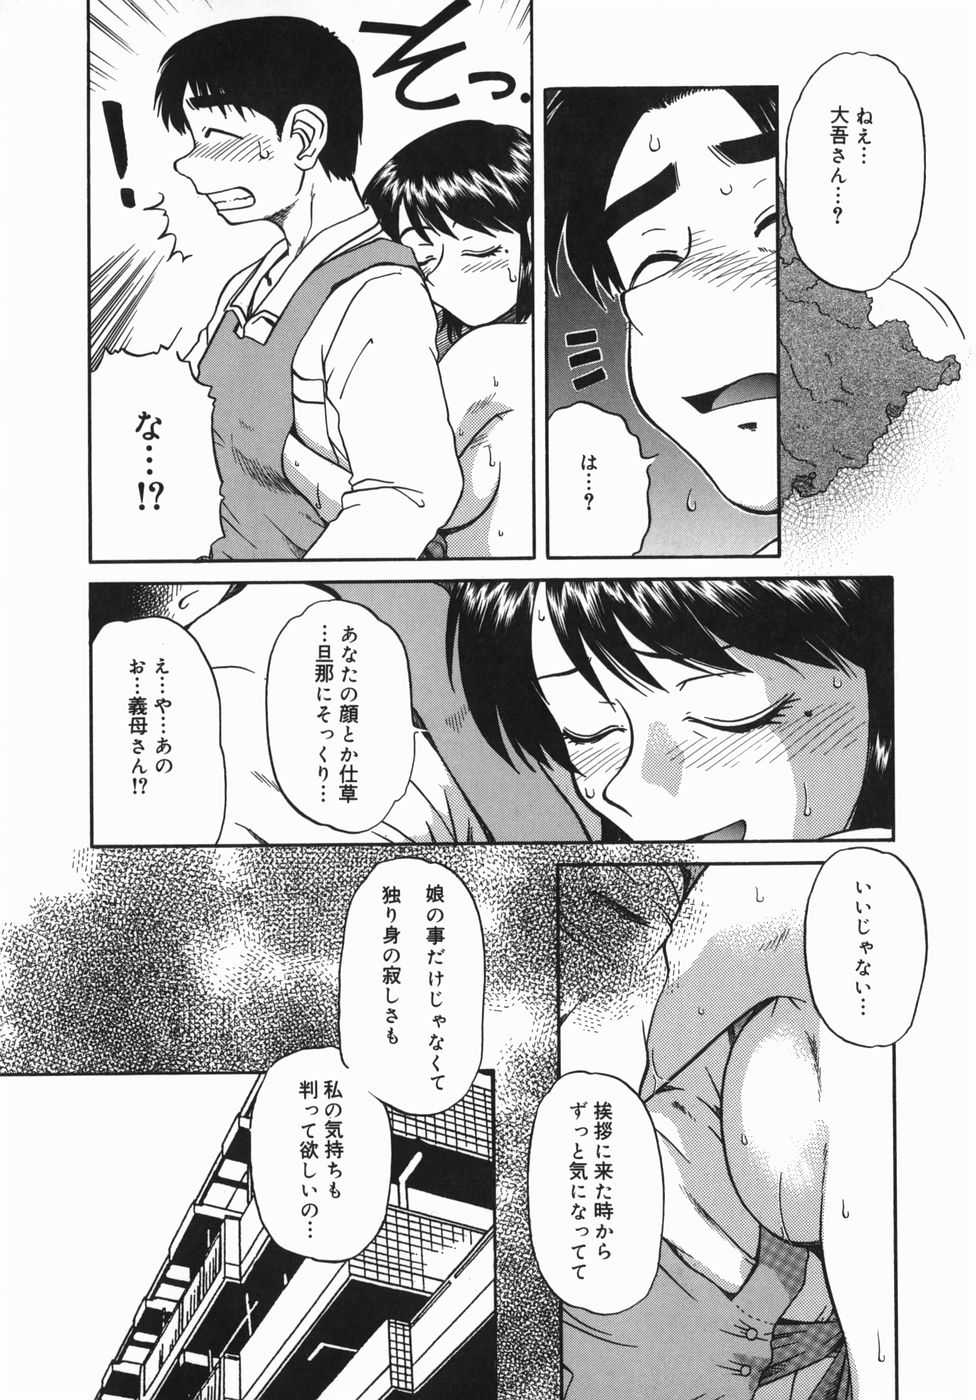 [Mishima Yuki] Shinya ni Youkoso - Welcome to midnight. [みしまゆき] 深夜にようこそ